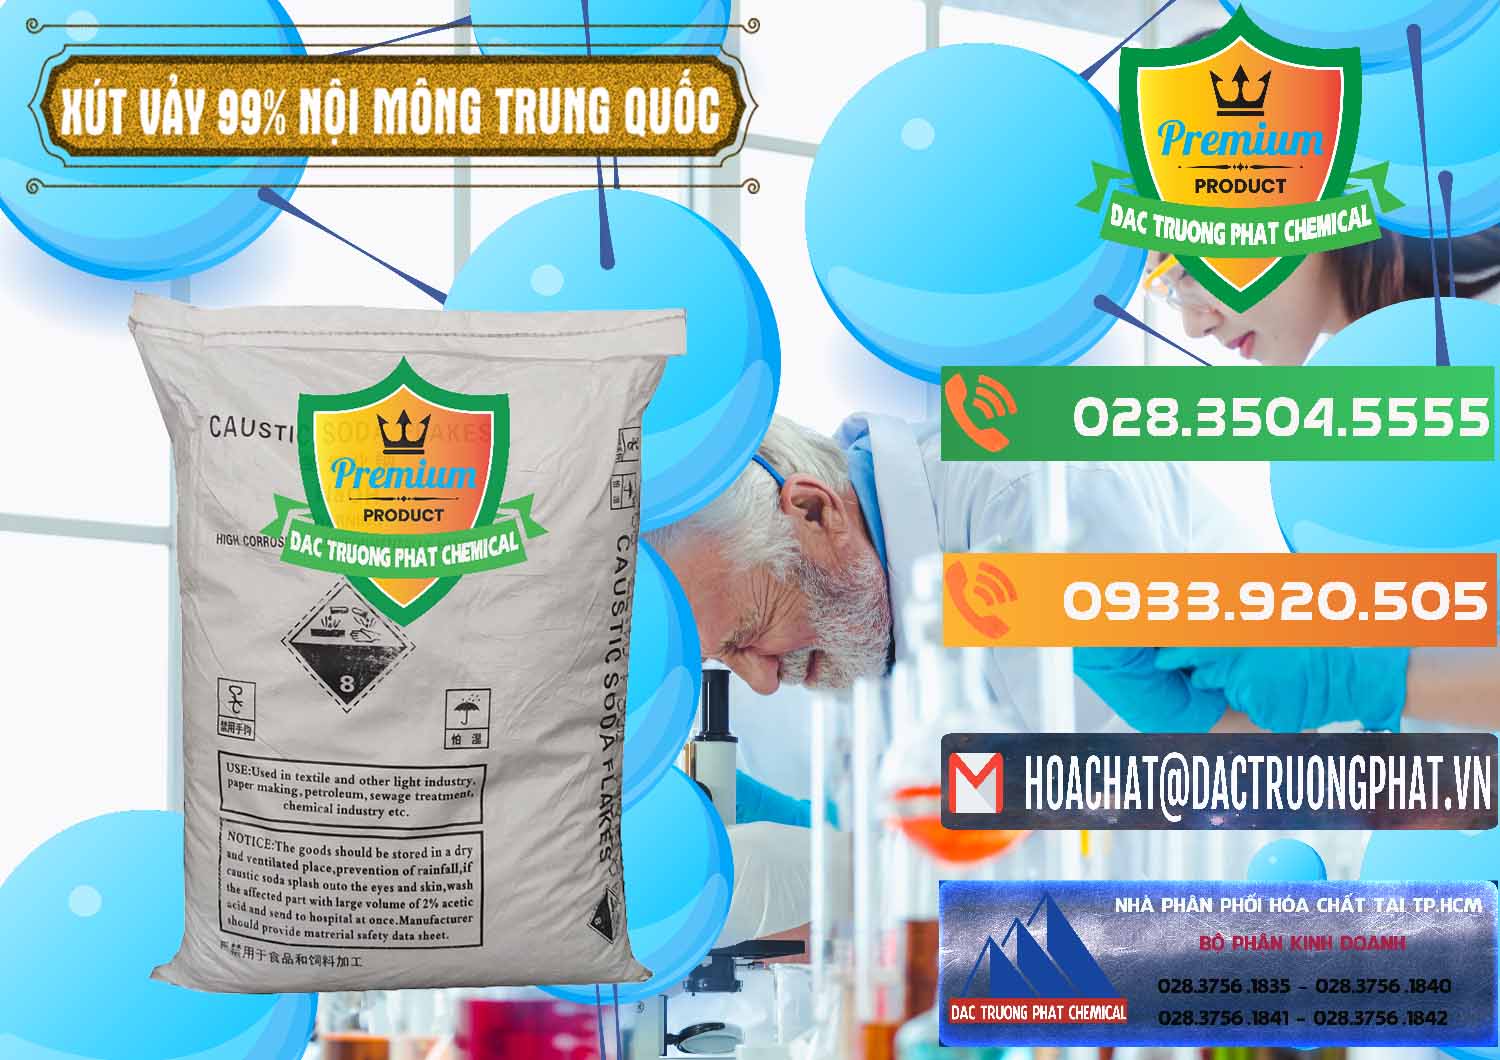 Nơi bán Xút Vảy - NaOH Vảy 99% Nội Mông Trung Quốc China - 0228 - Công ty kinh doanh và phân phối hóa chất tại TP.HCM - hoachatxulynuoc.com.vn